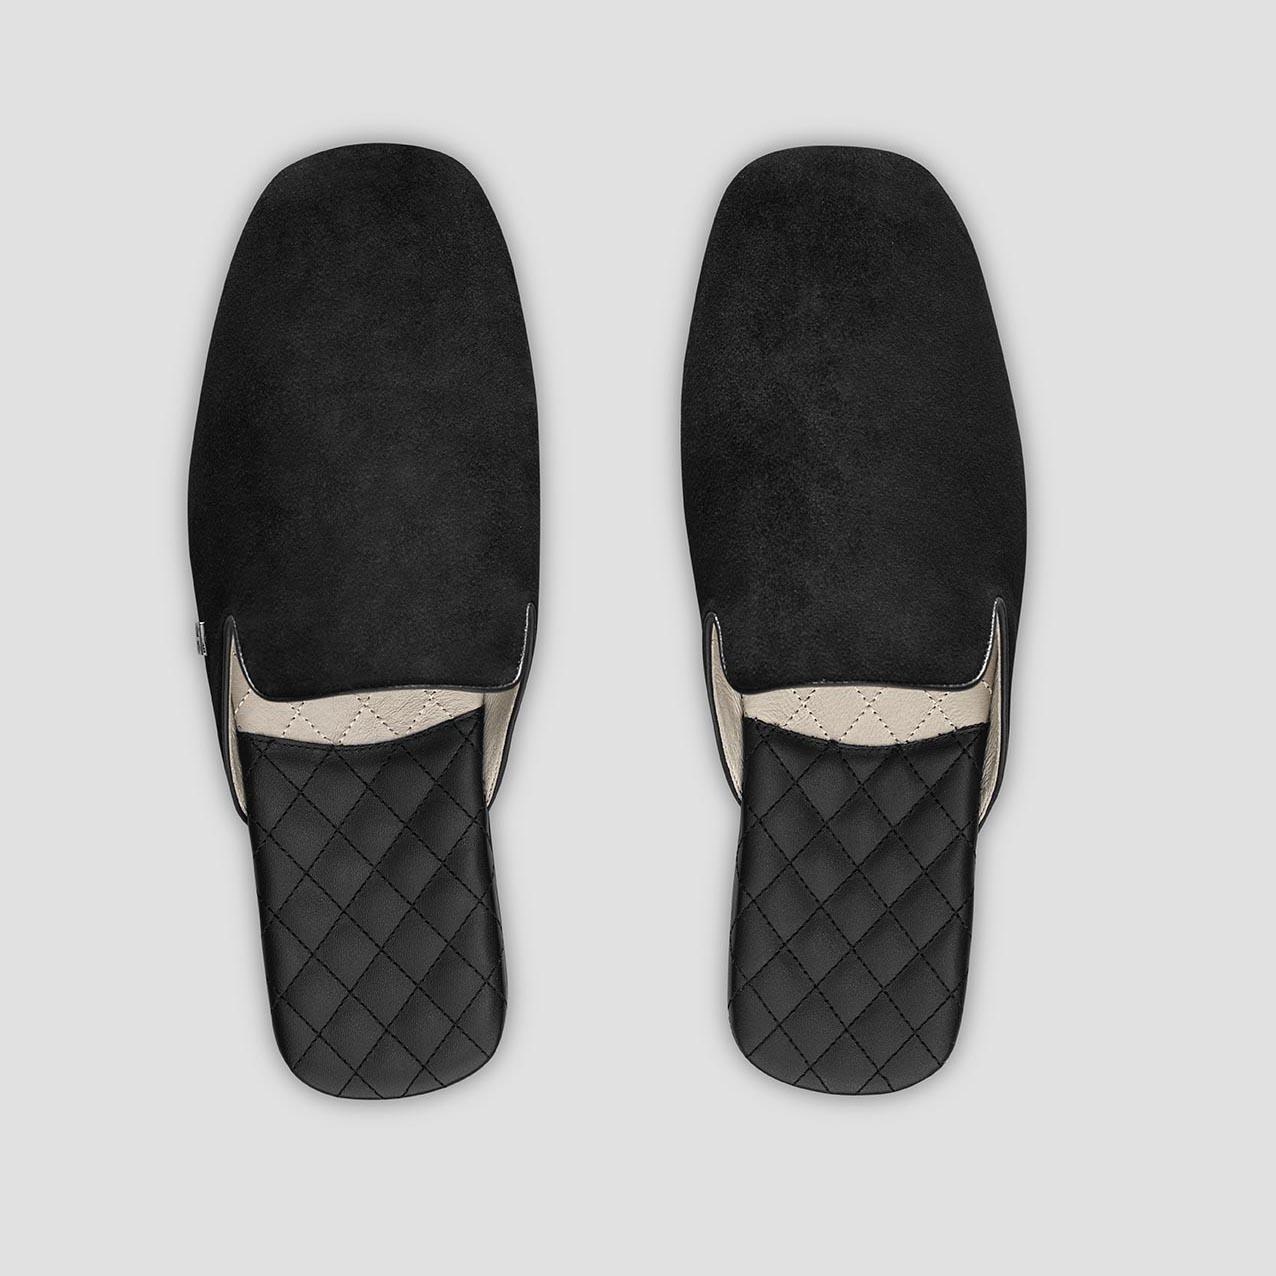 Тапочки Togas Реон черные мужские кожаные, размер 42-43 тапочки togas оливер мужские черные р 42 43